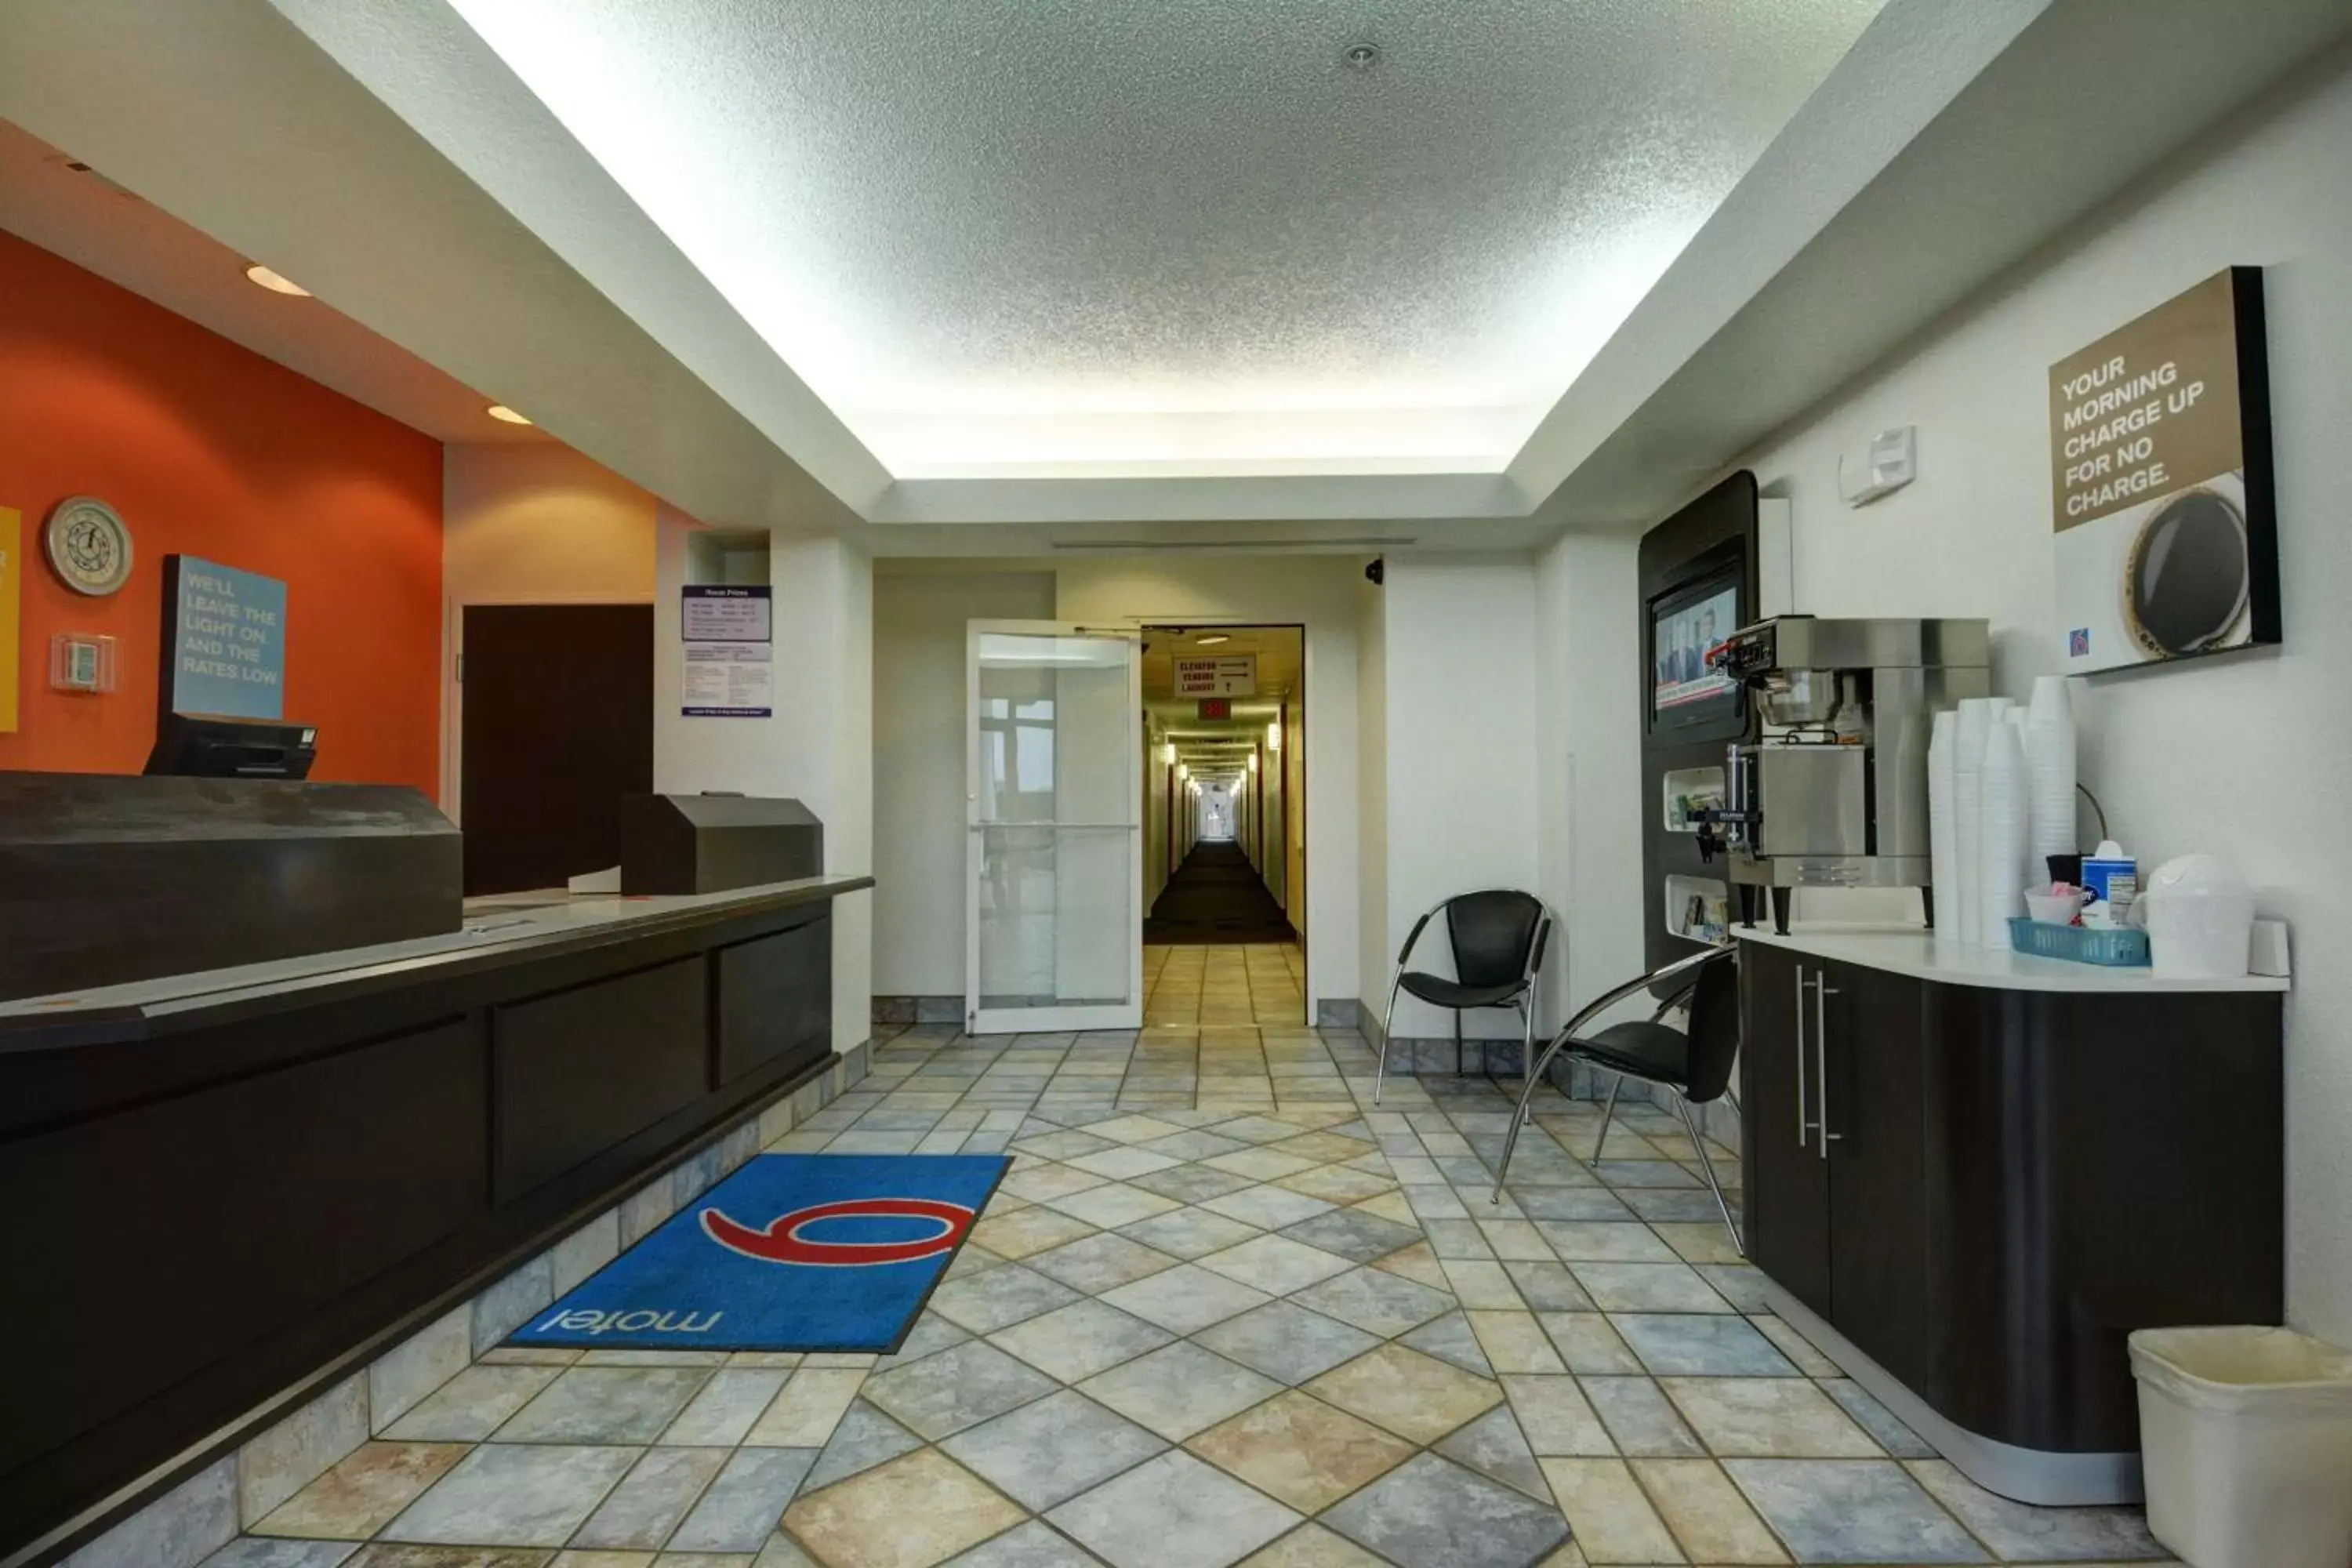 Lobby or reception, Lobby/Reception in Motel 6-Denison, TX